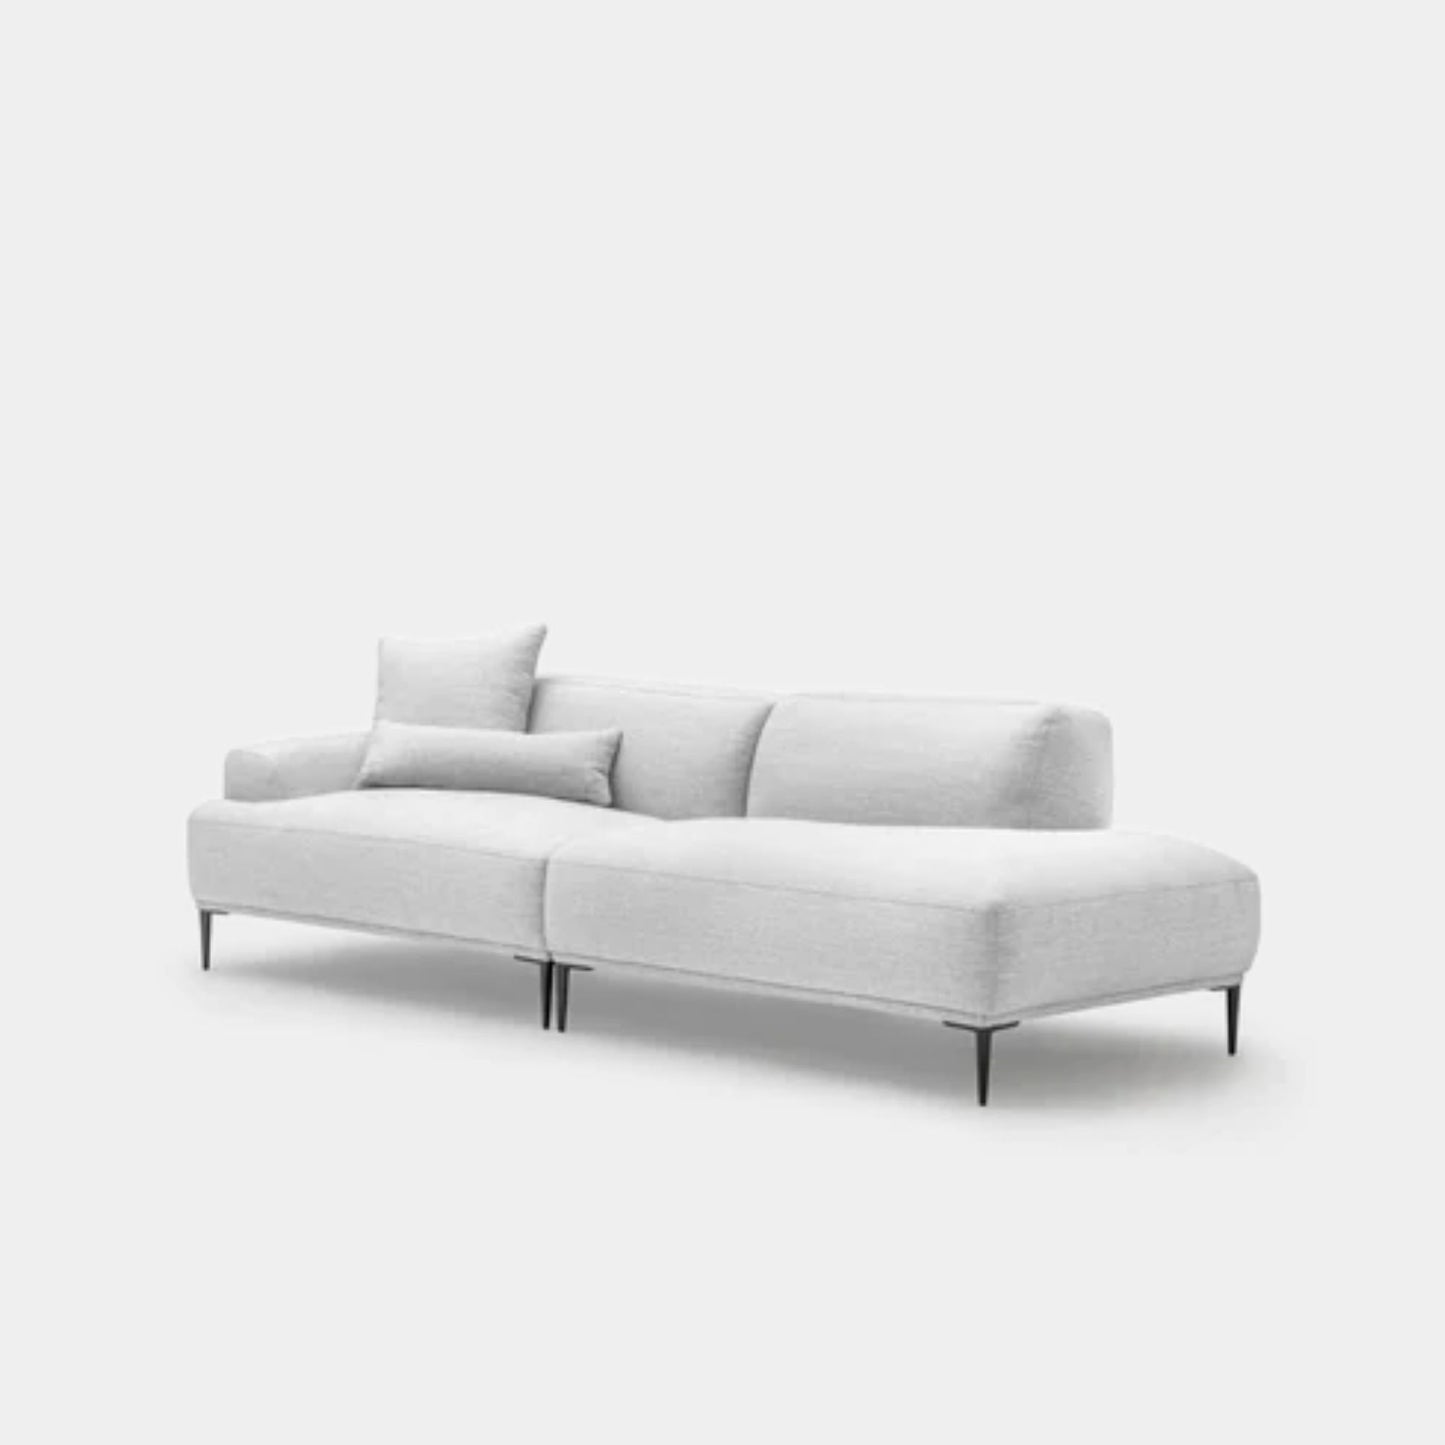 Crystal fabric one arm sofa right grey